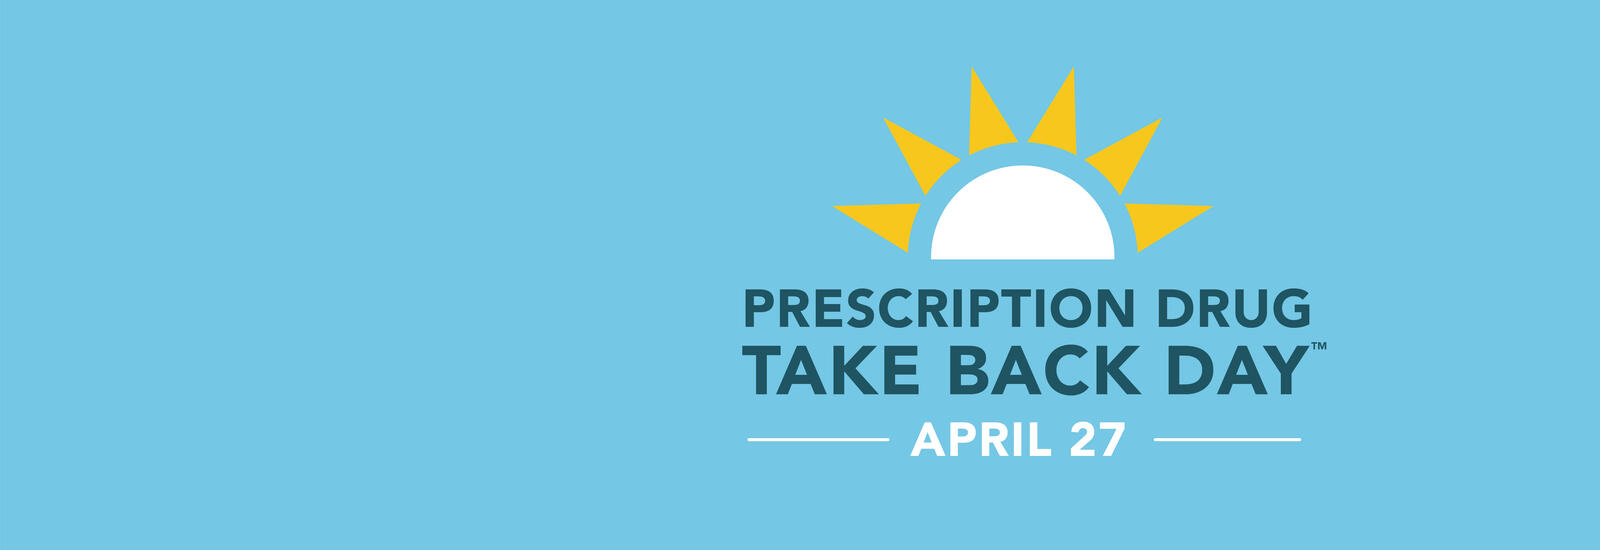 Prescription Drug Take Back Day is April 27.